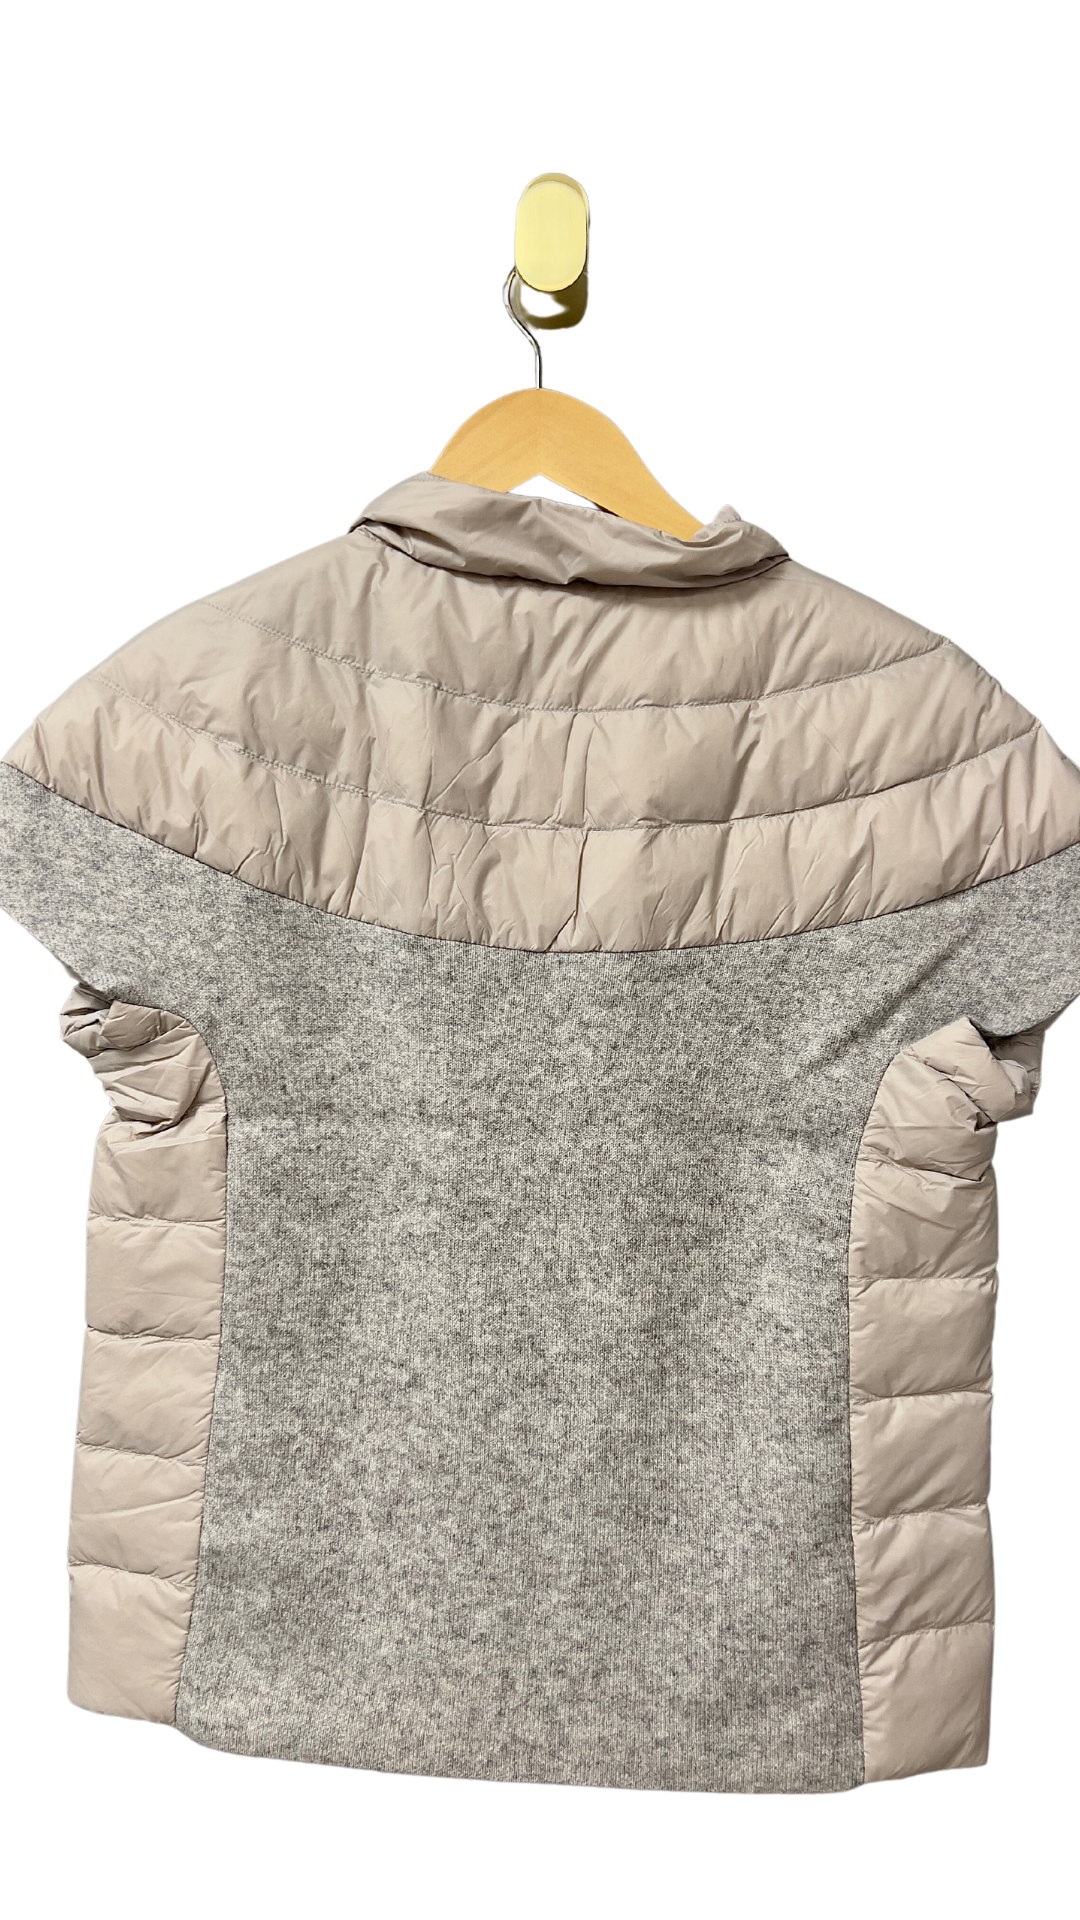 Wellesley Puffer Vest in Gray